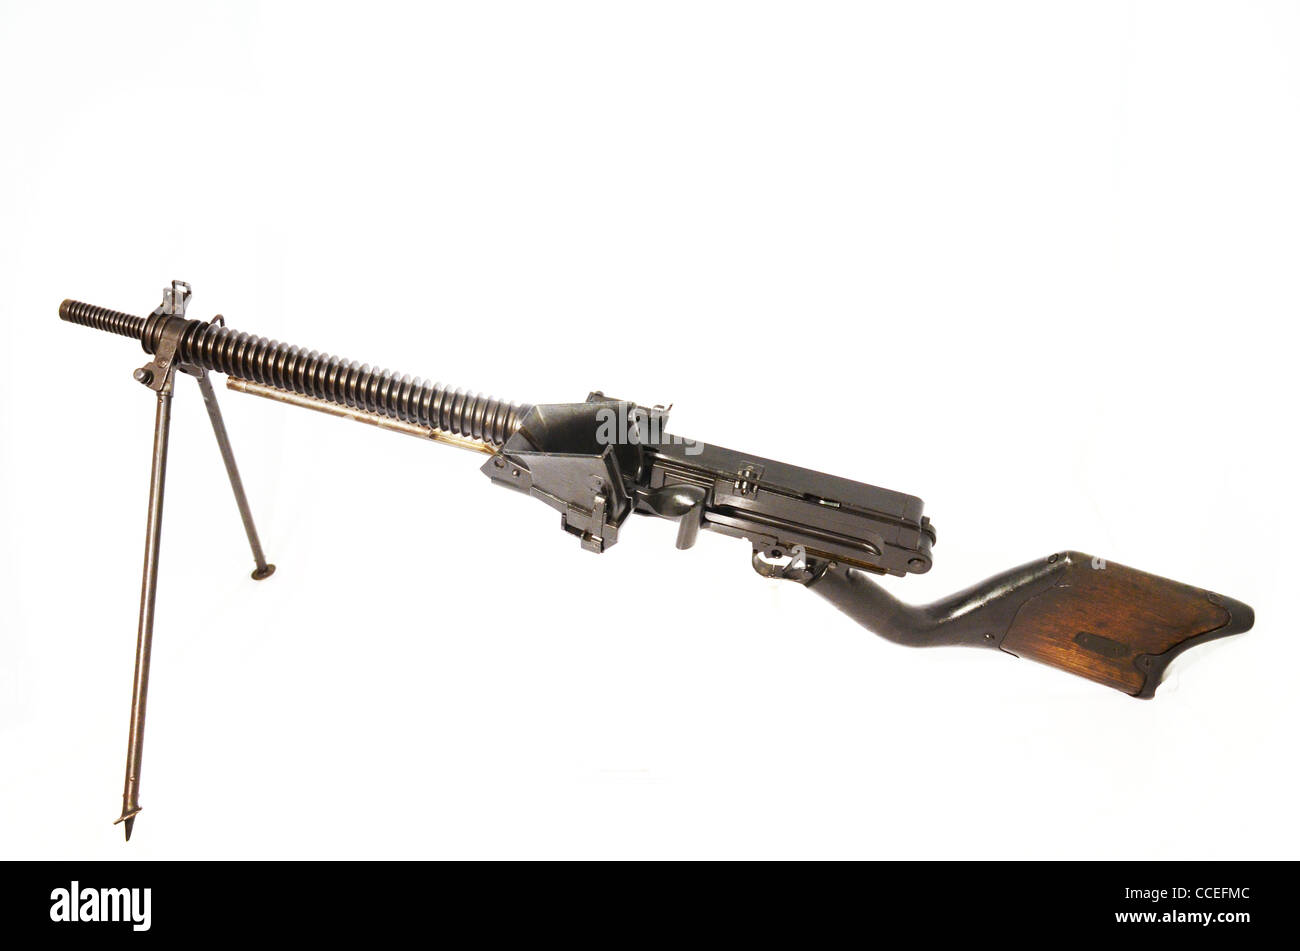 6,5 mm japonais LMG sans capbilty unique rond utilisé tout au long de la deuxième guerre mondiale 1922 2 .jpg Banque D'Images